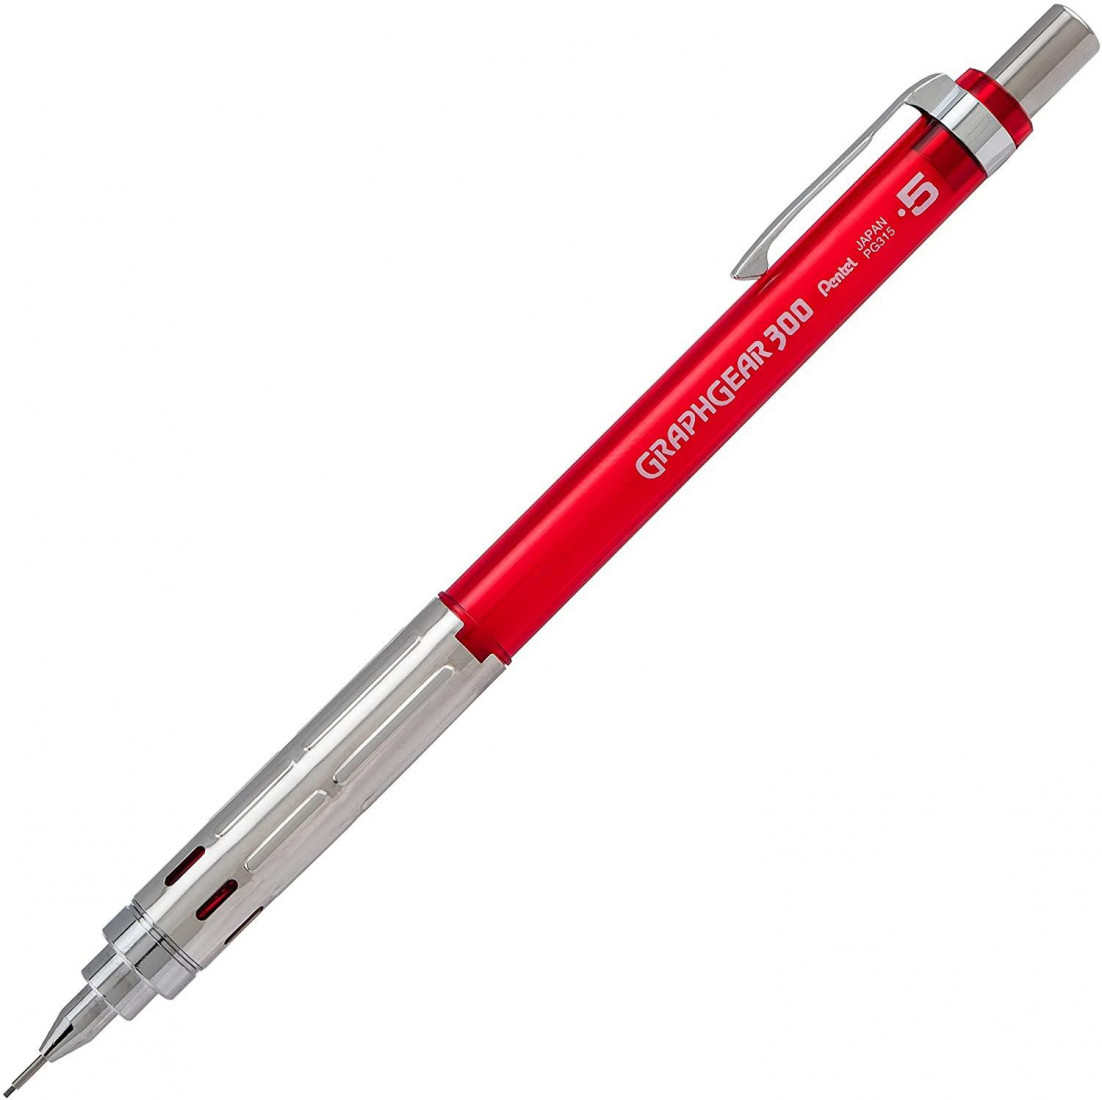 Pentel Graphgear 300 Red 0.5mm mechanical pencil  PG315-TBX